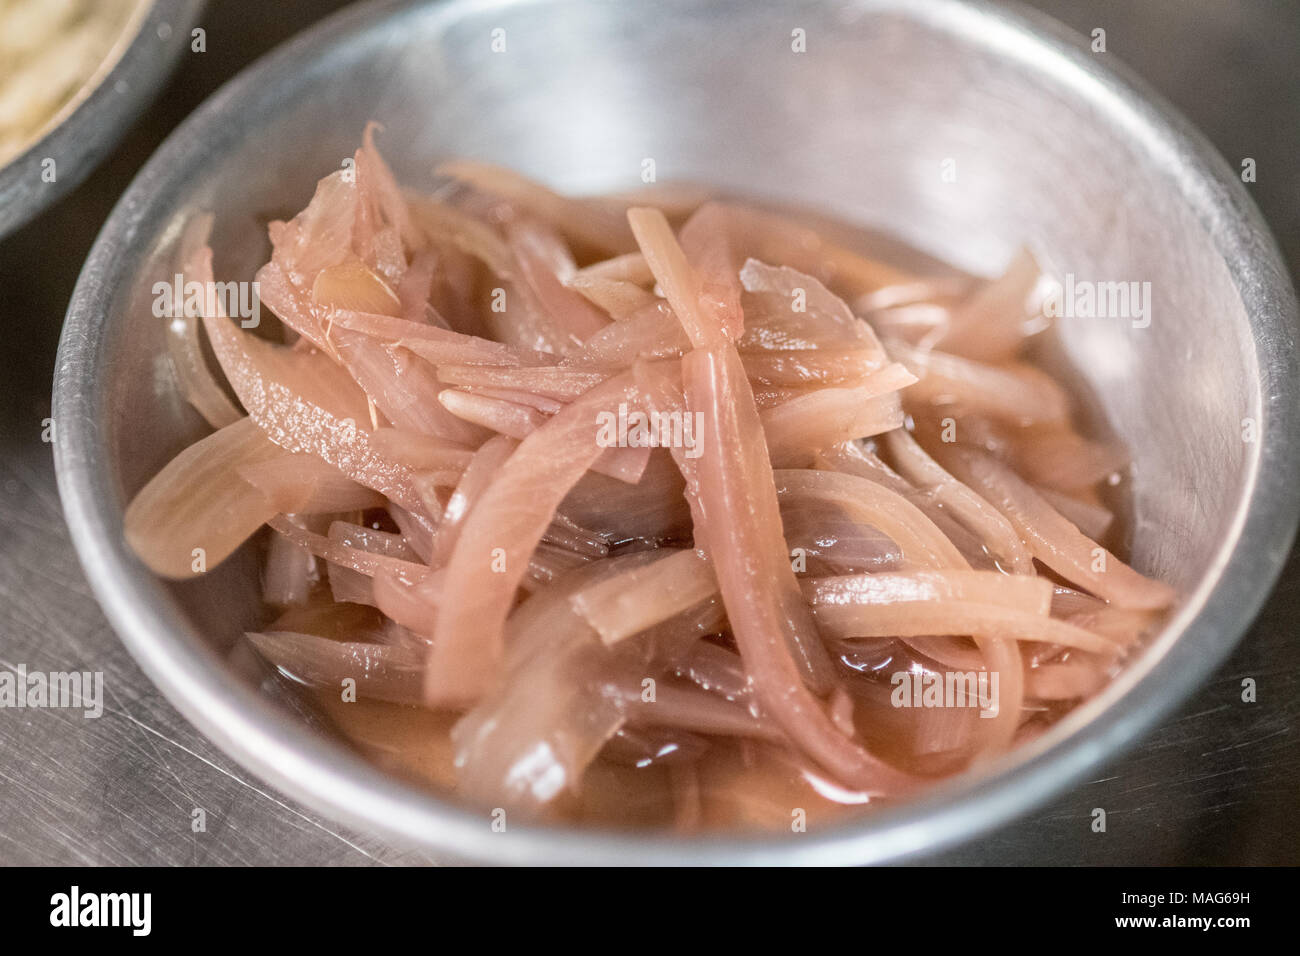 Las cebollas en rodajas recién preparado en un recipiente para la preparación de comidas Foto de stock